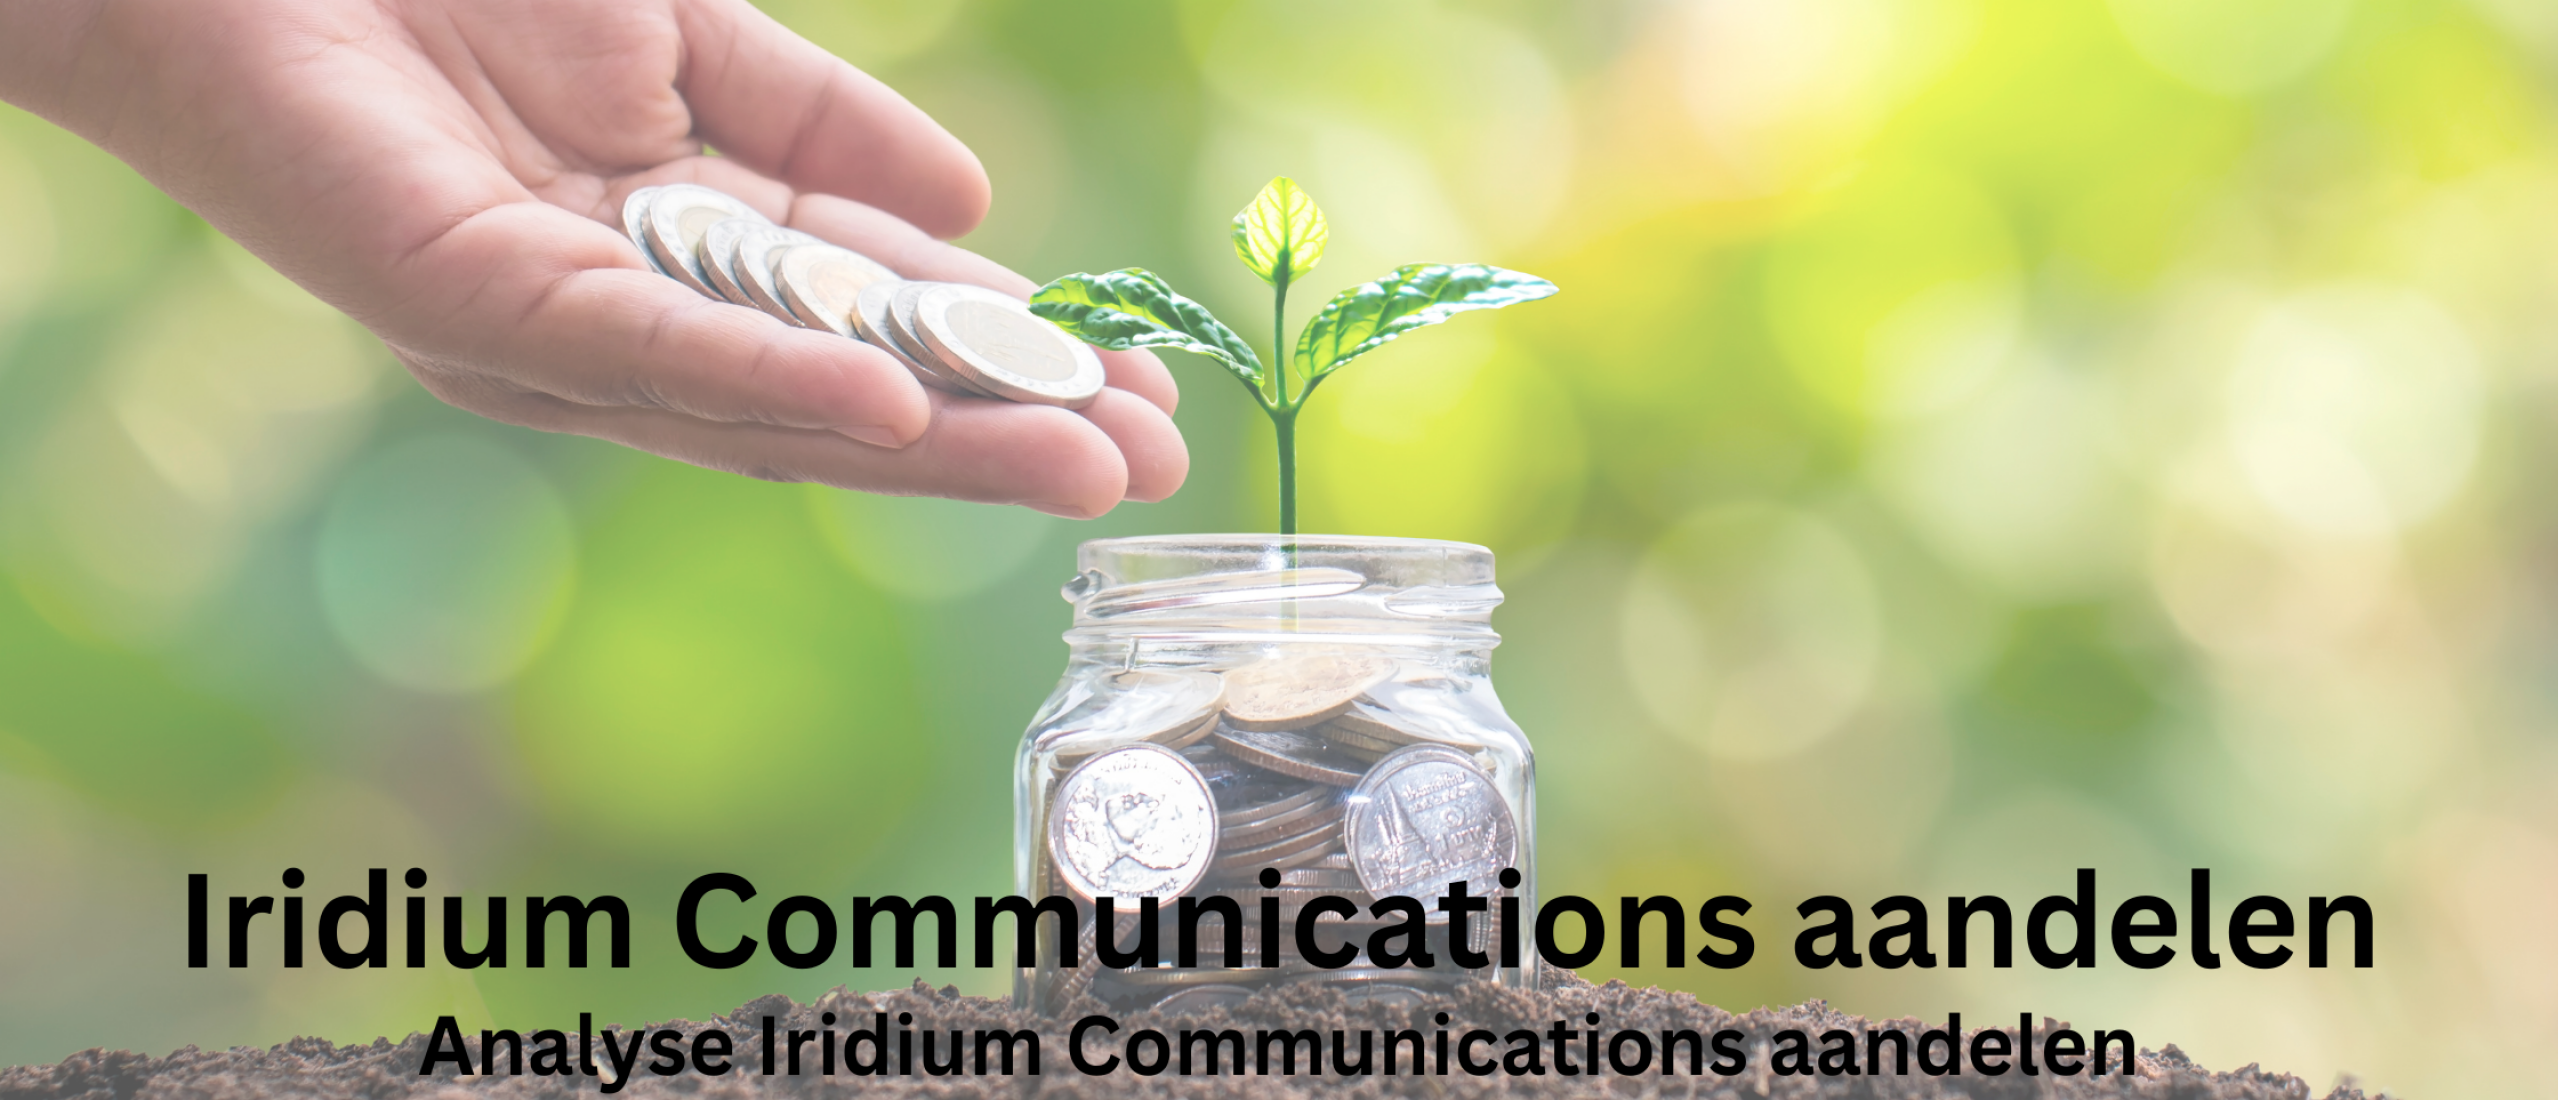 Iridium Communications aandelen kopen? Analyse +48% Groei | Happy Investors